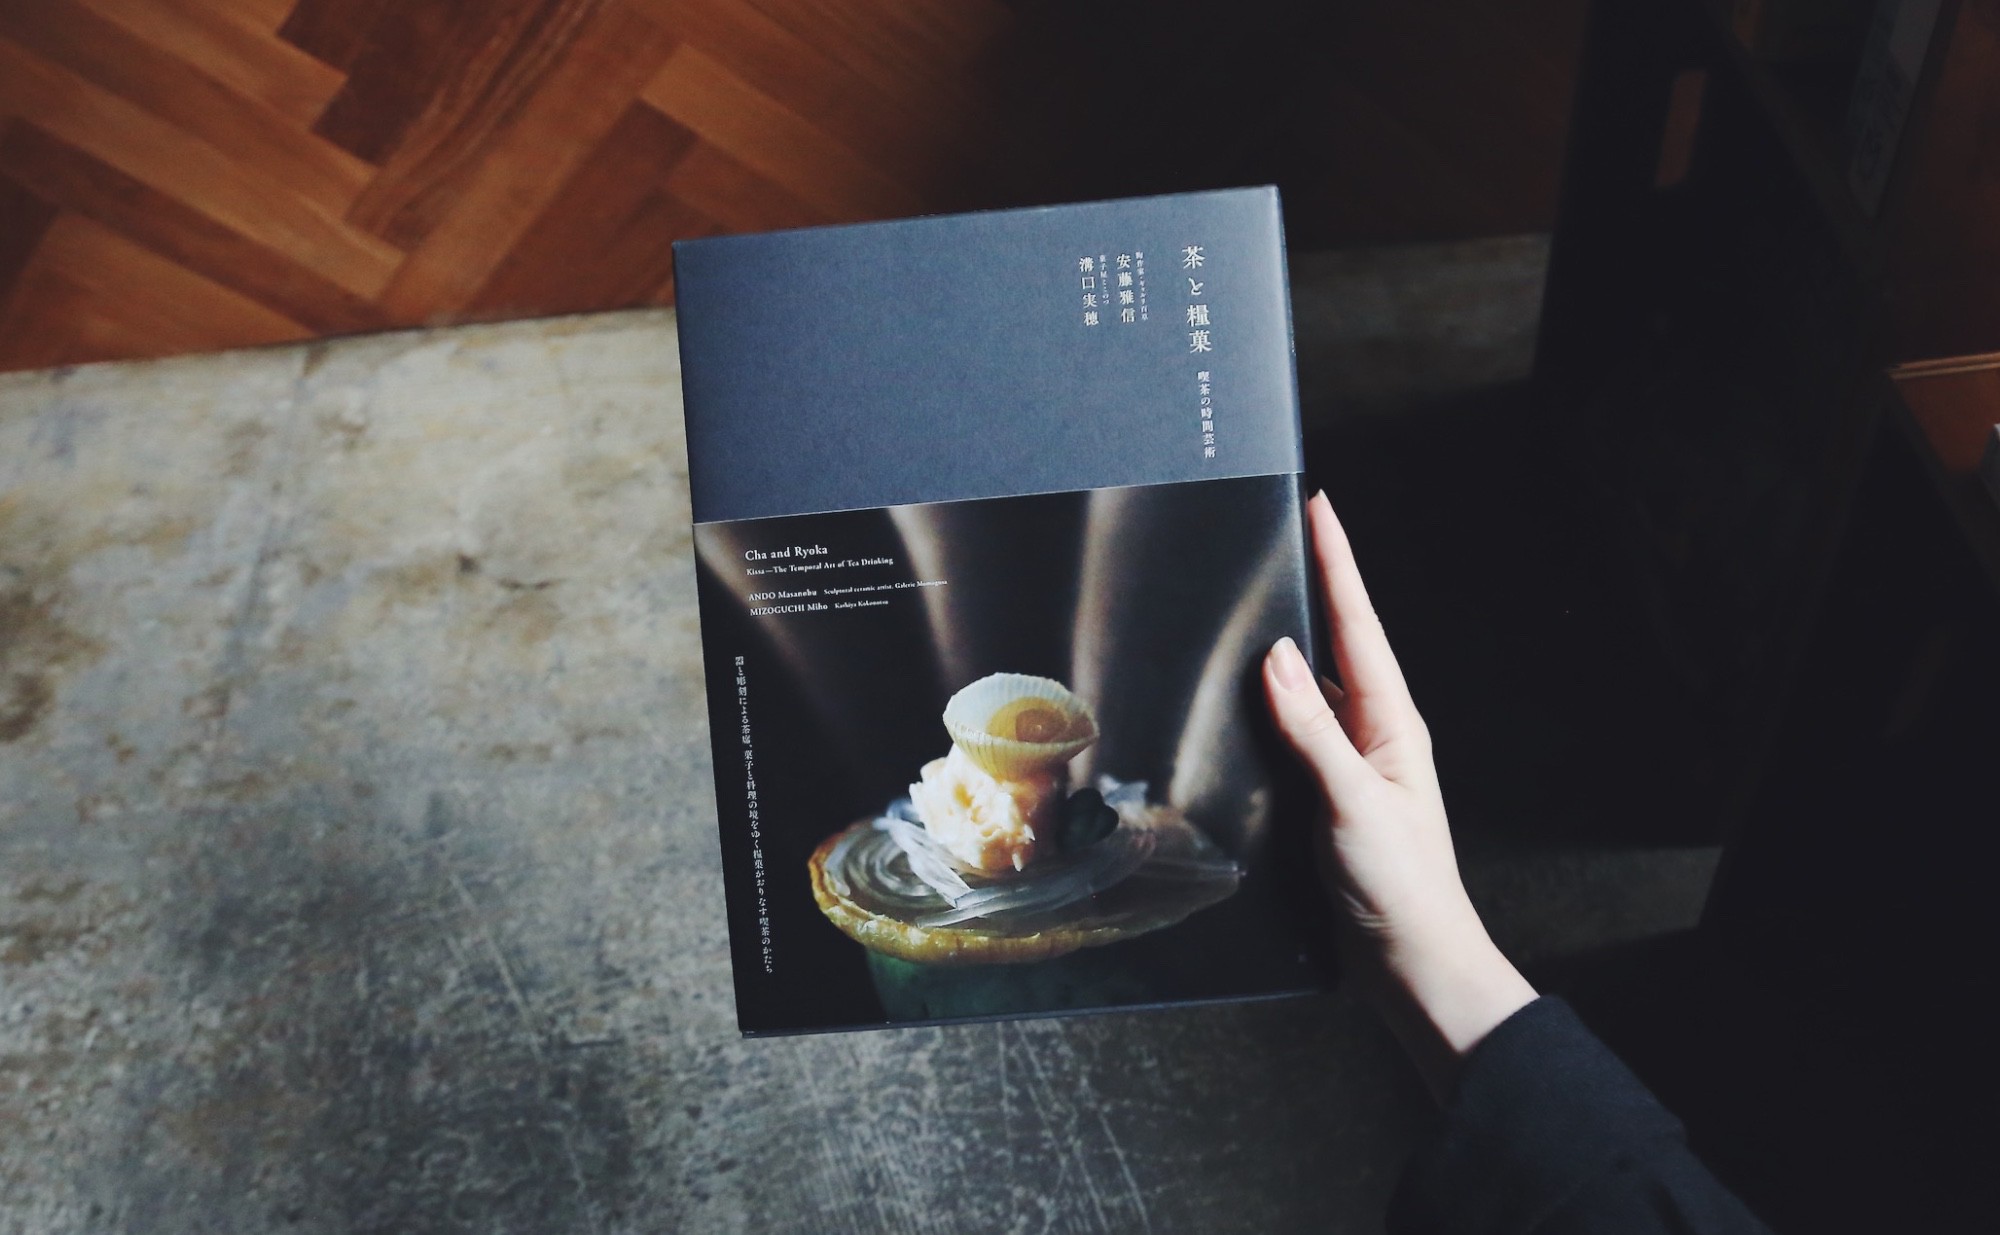 安藤雅信、溝口実穂 共著『茶と糧菓』 刊行記念展を開催します